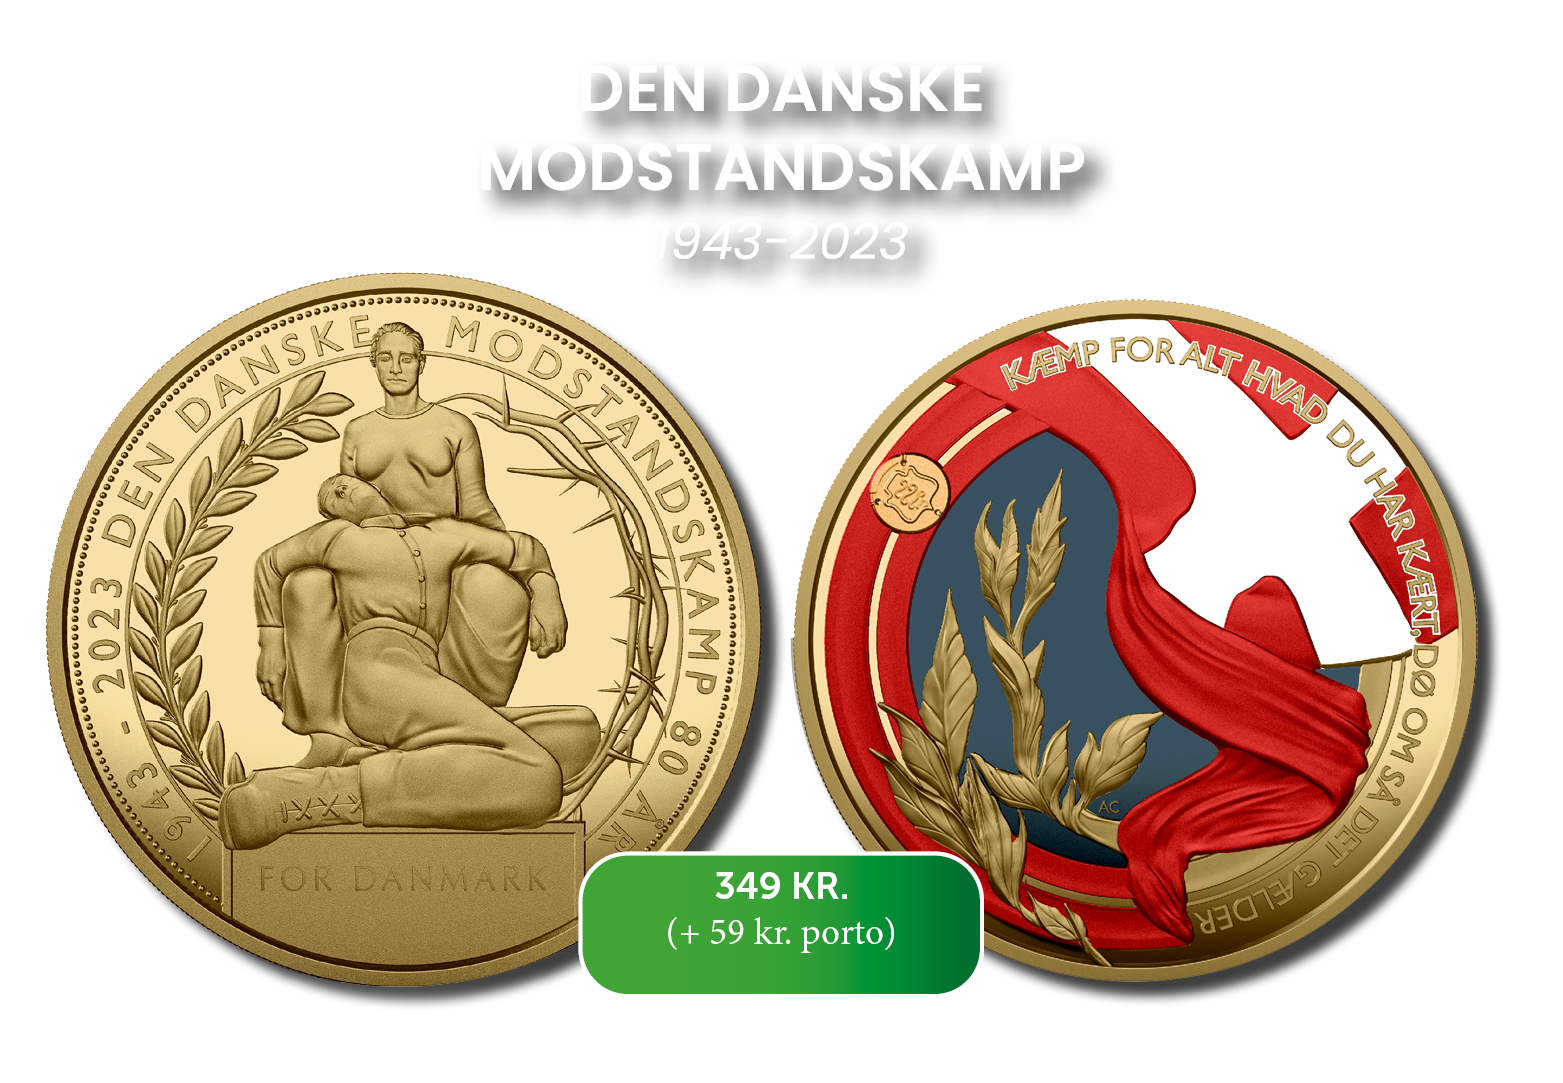 Den danske modstandskamp - forgyldt medalje med safir-, rubin- og diamantstøv